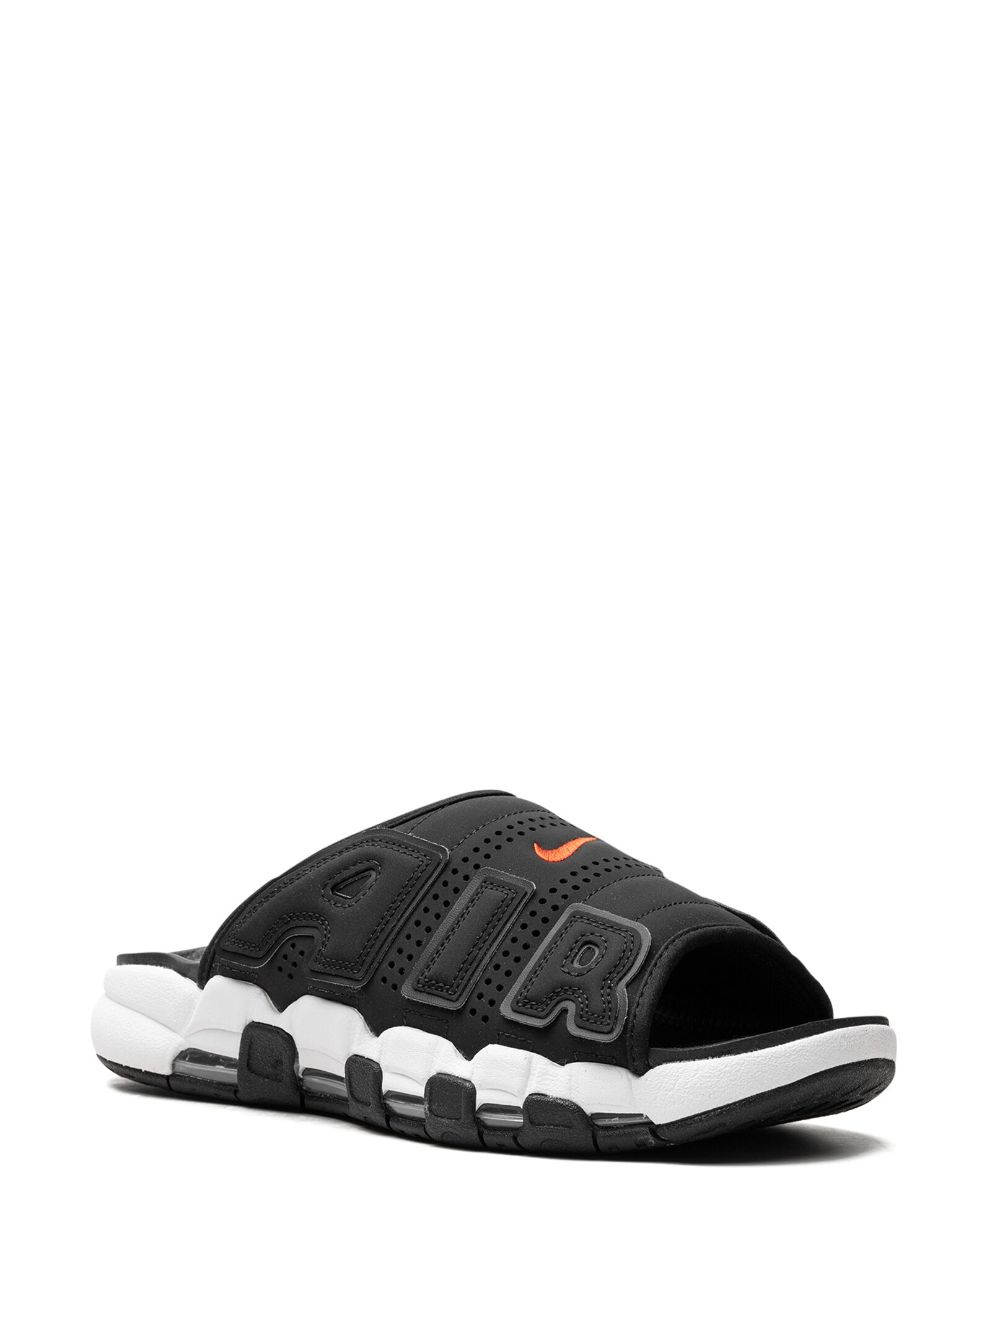 Nike Air More Uptempo Black/White/Red slippers - Zwart